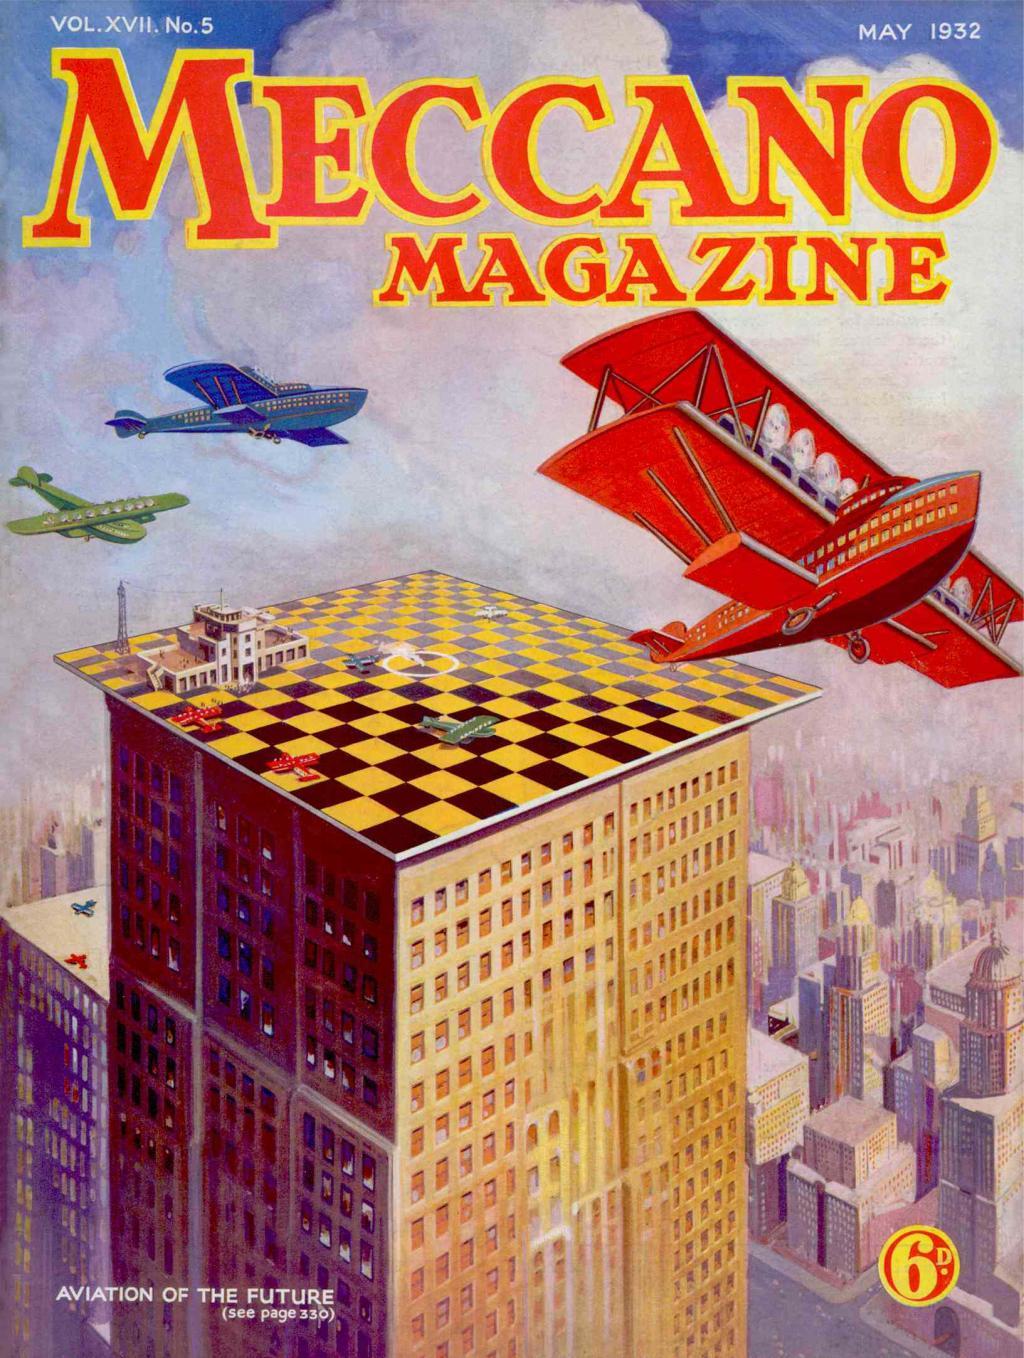 Book Cover For Meccano Magazine v17 5